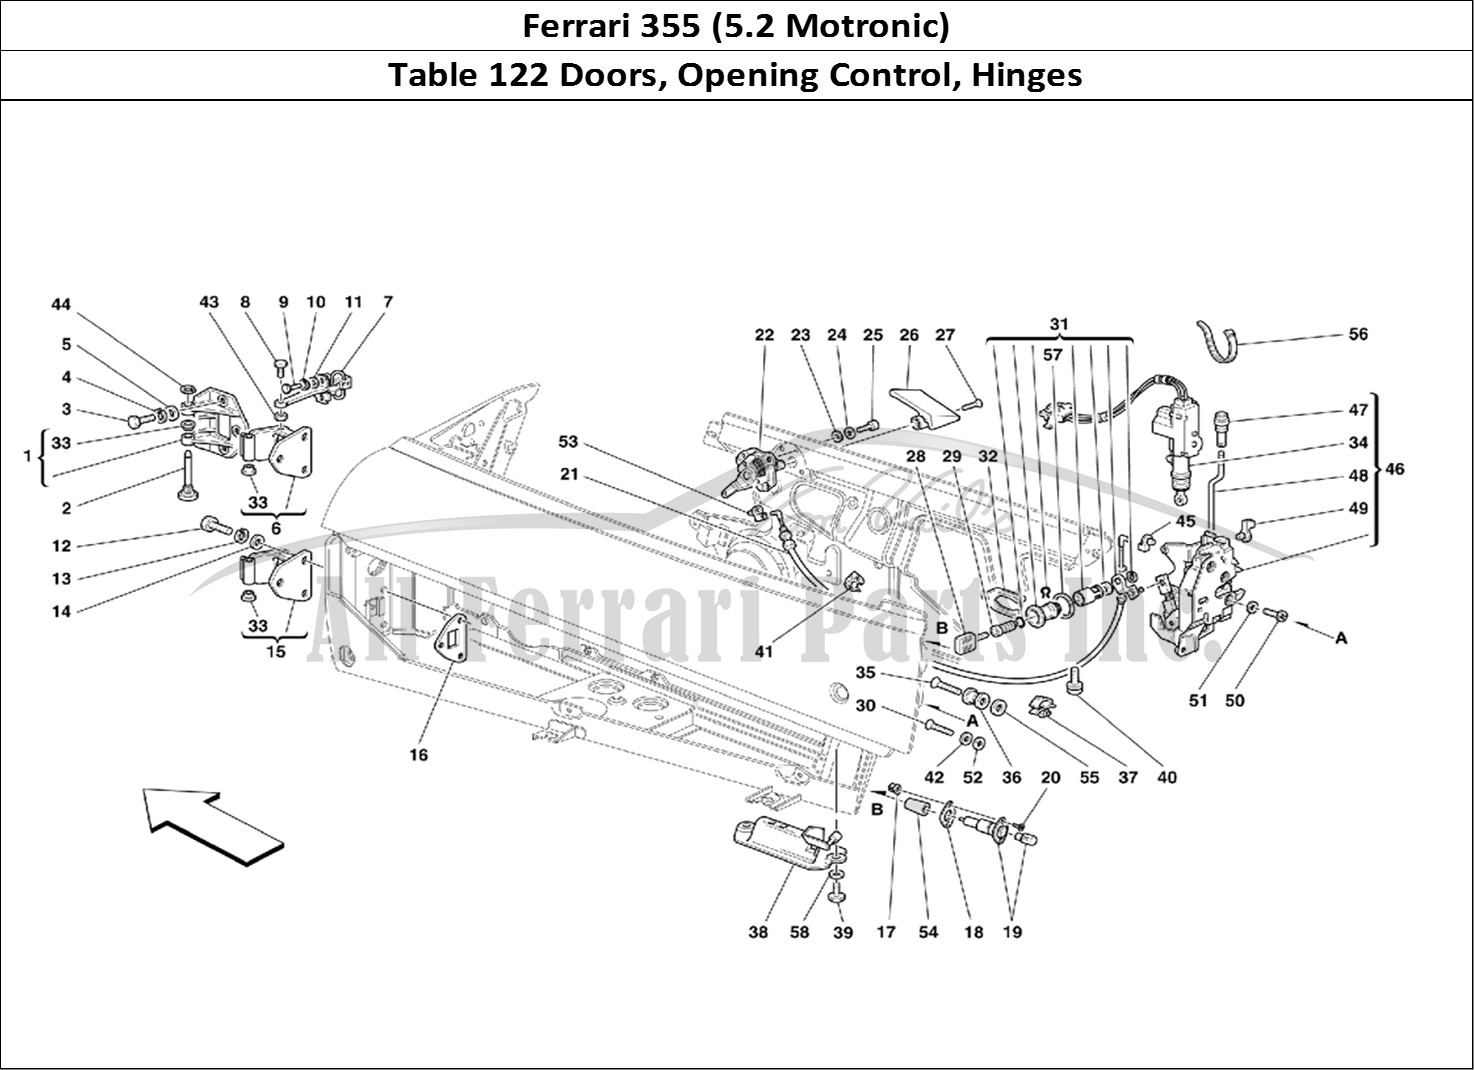 Ferrari Parts Ferrari 355 (5.2 Motronic) Page 122 Doors - Opening Control a